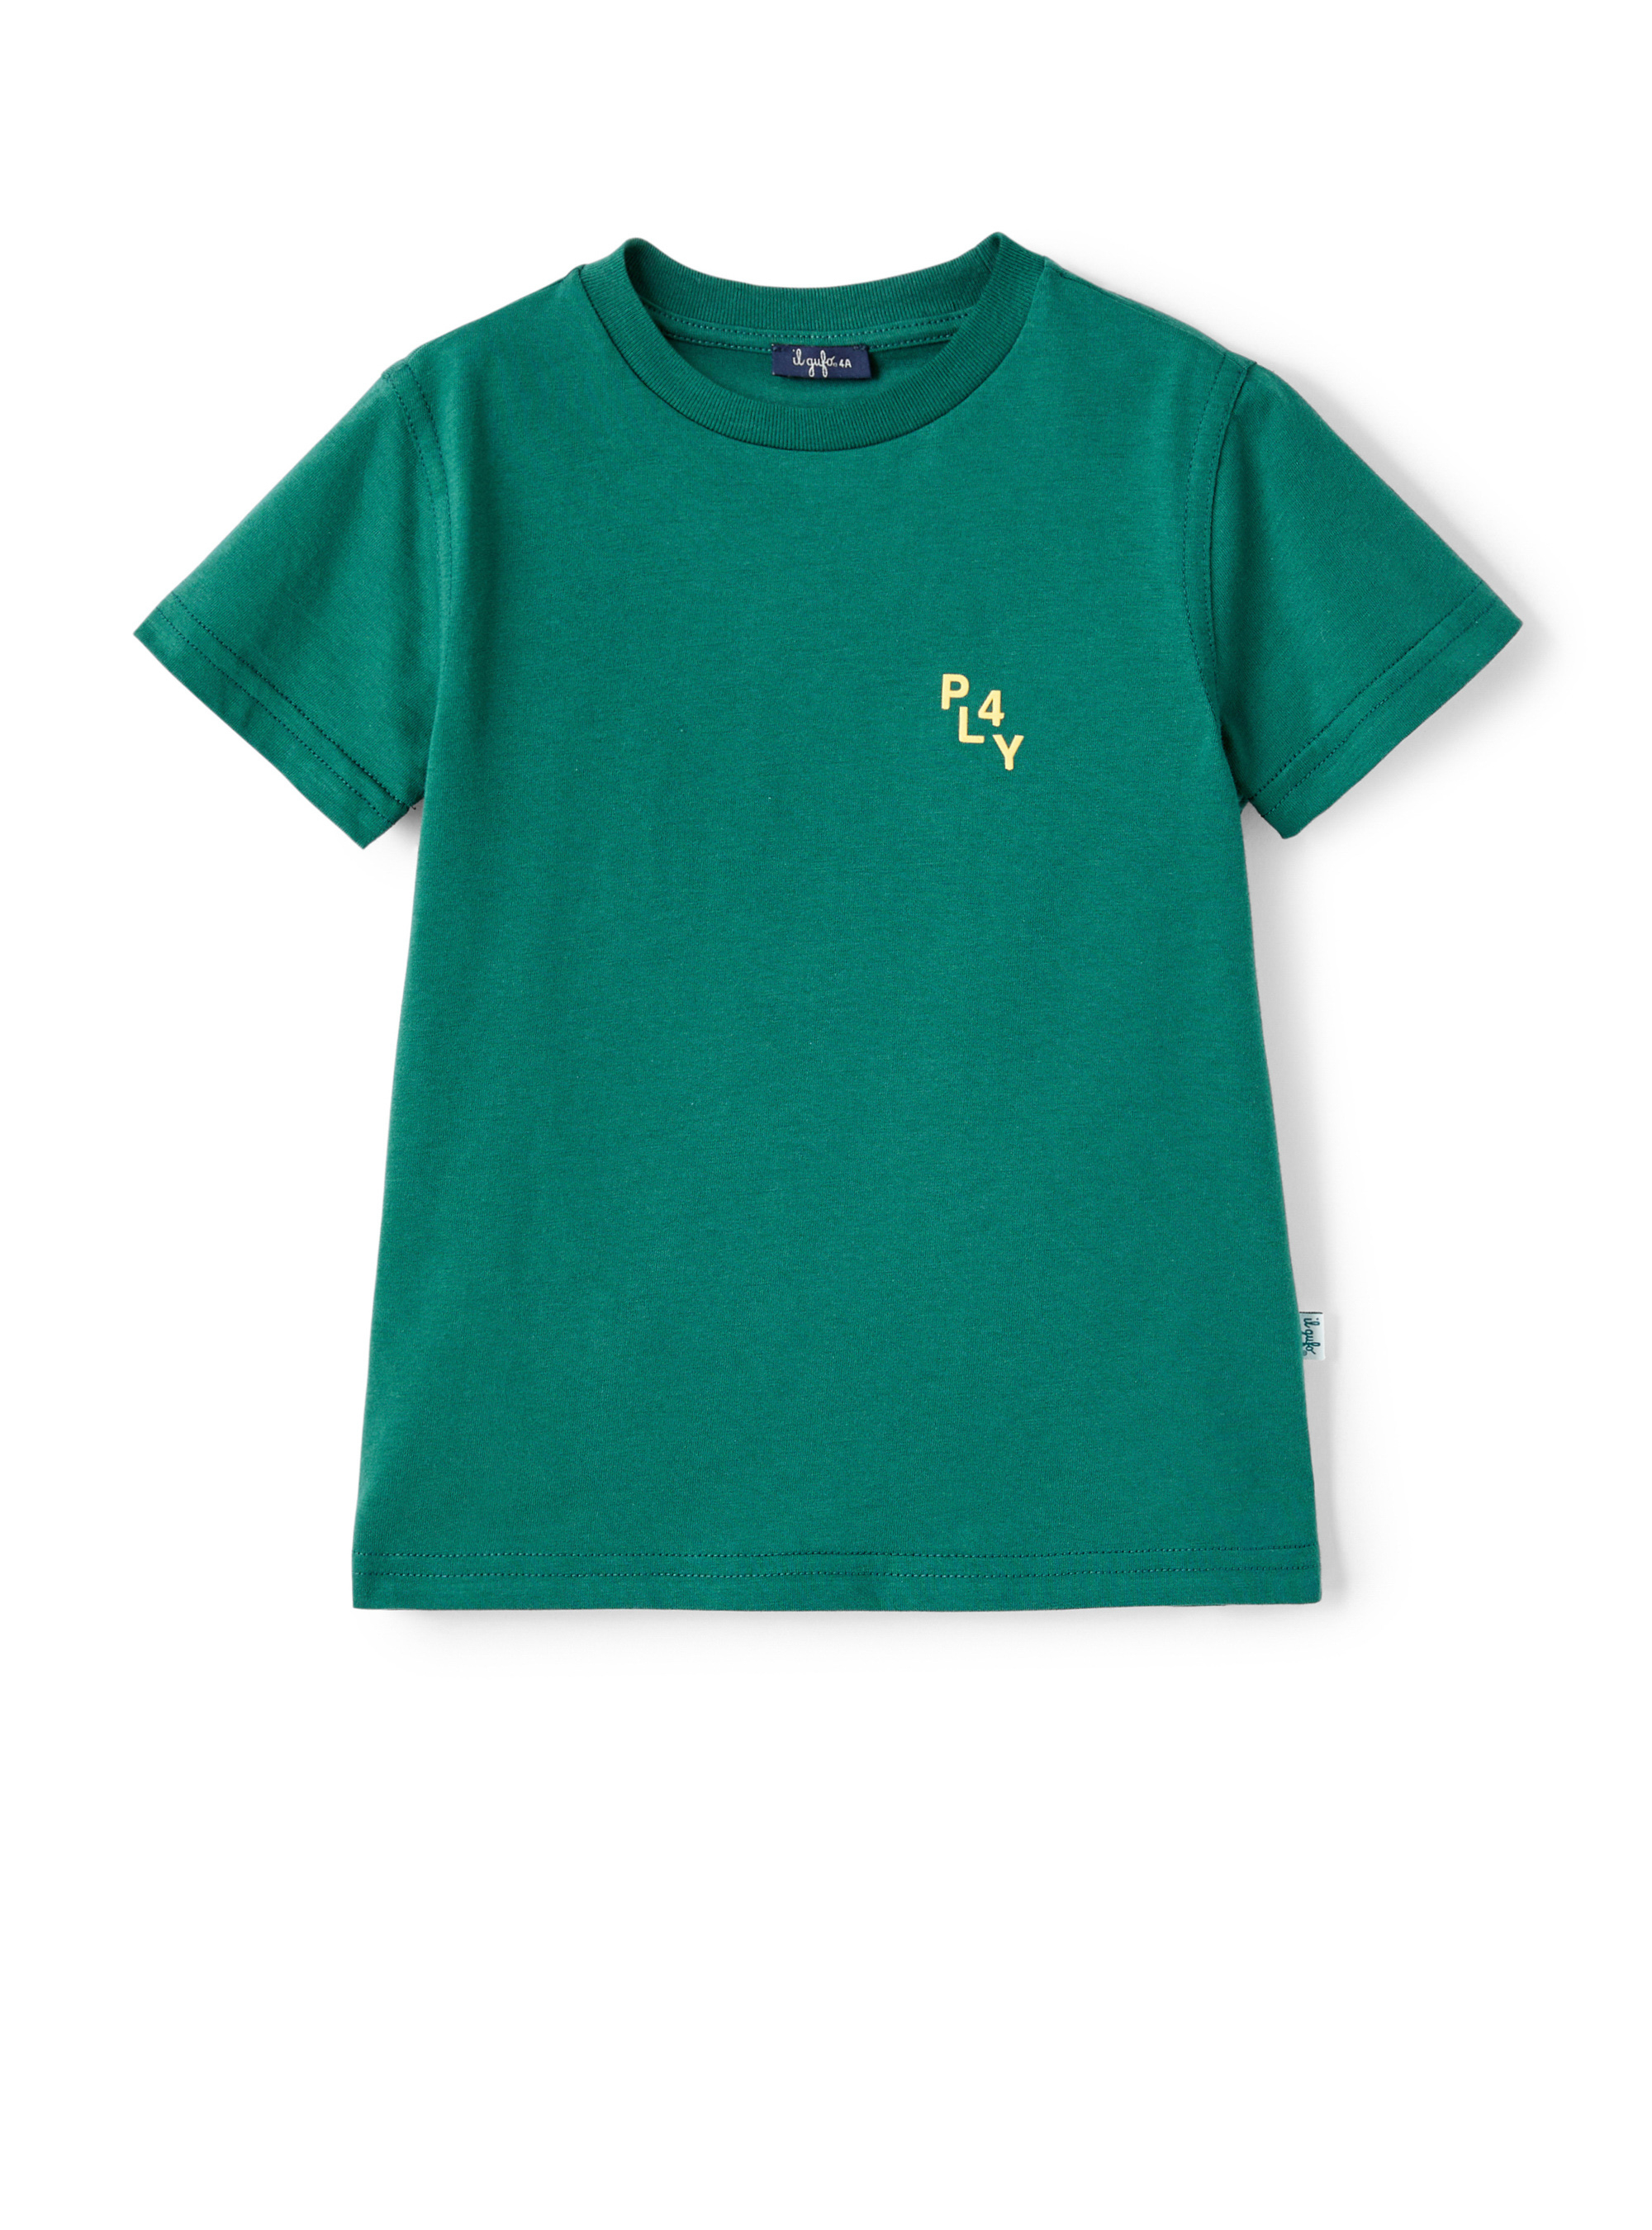 Grünes T-Shirt mit Aufdruck auf dem Rücken - Grün | Il Gufo